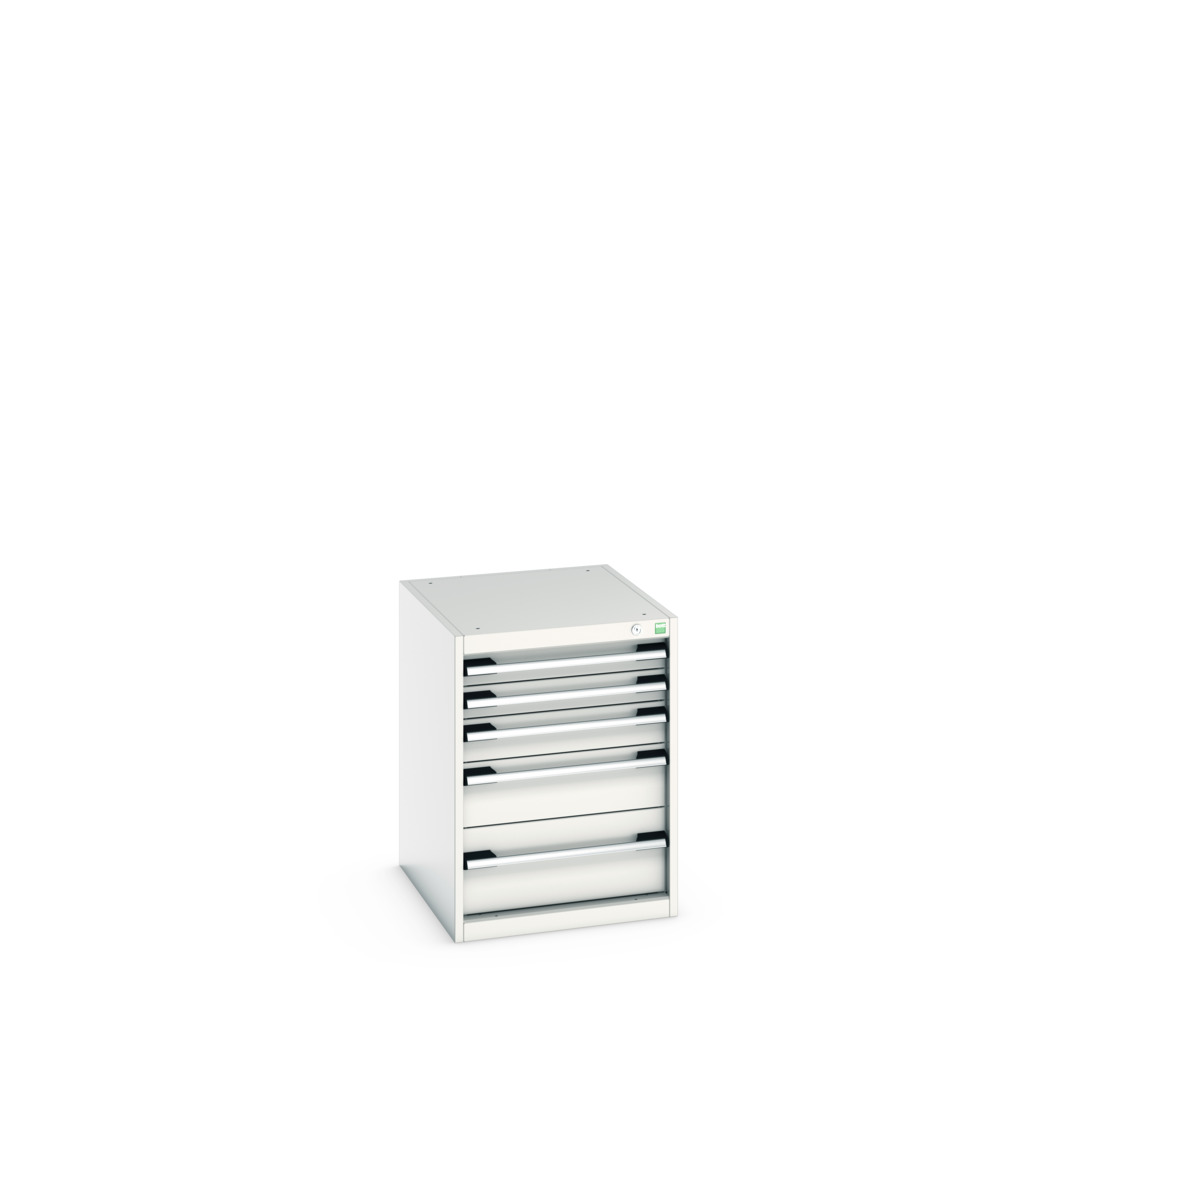 40018027.16V - cubio drawer cabinet